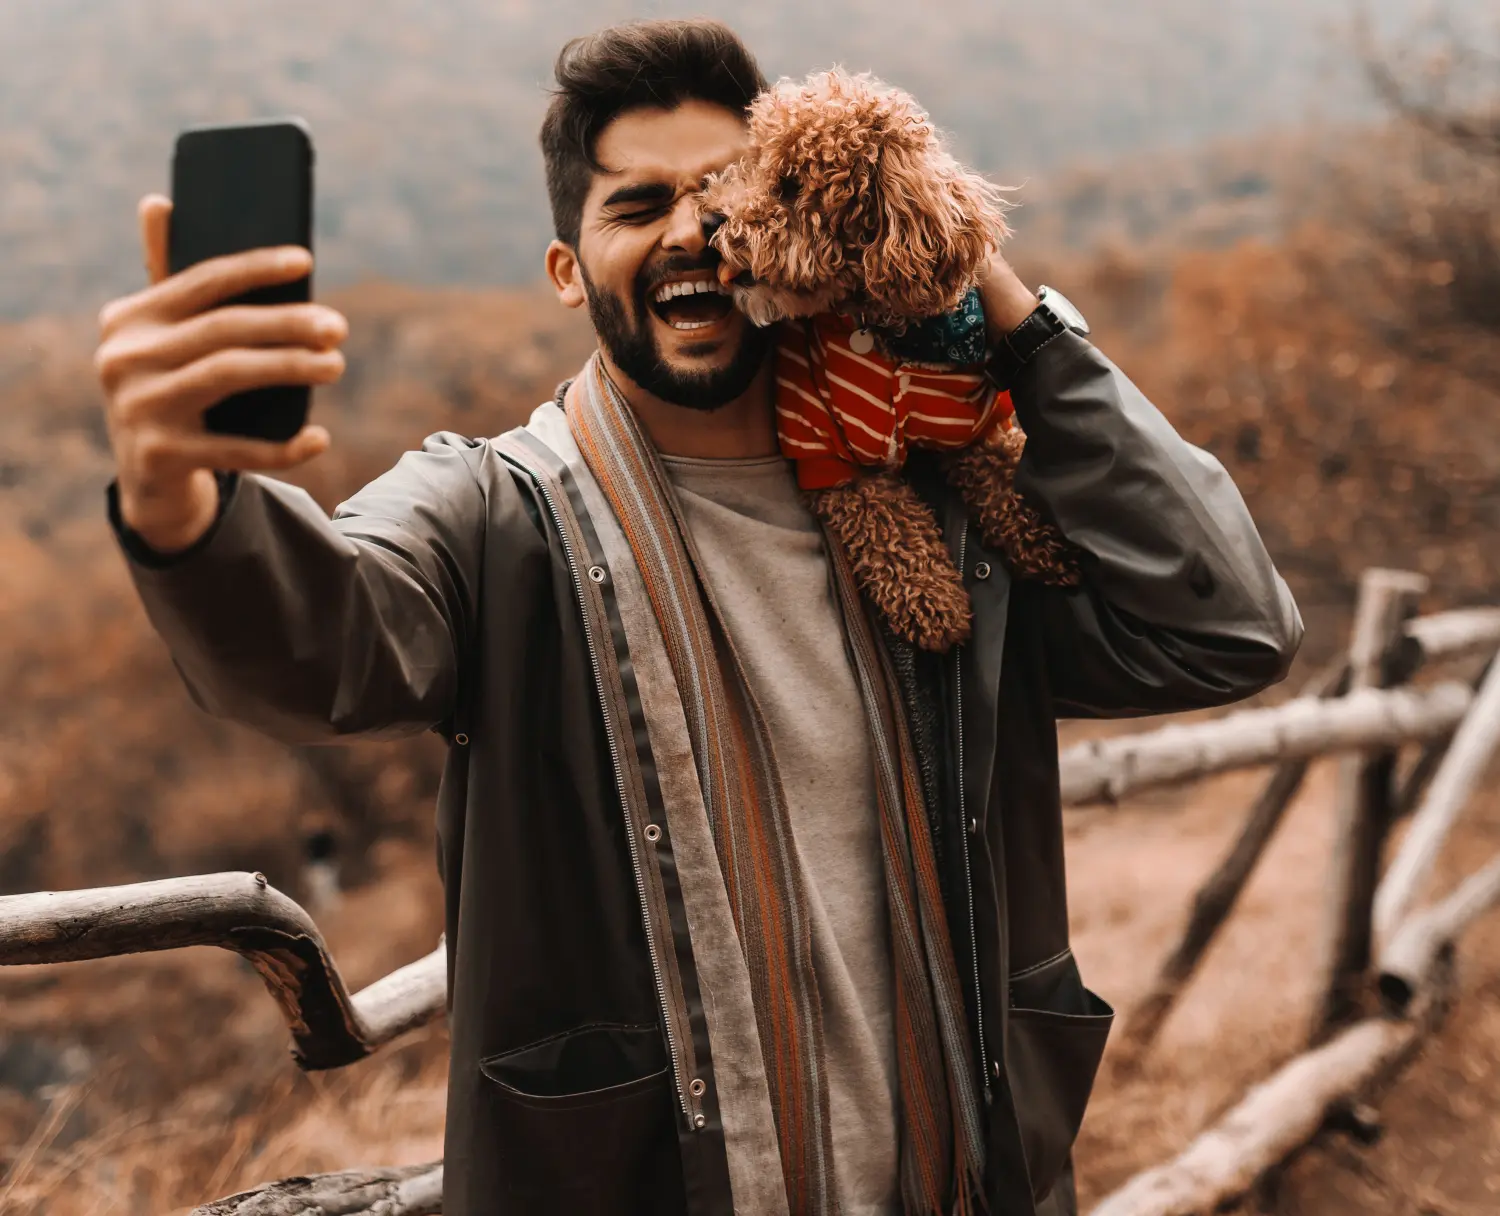 Pudel Fotos und Bilder. Dieser Pudelbesitzer hat großen Spaß ein Selfie mit seinem Pudel zu machen.